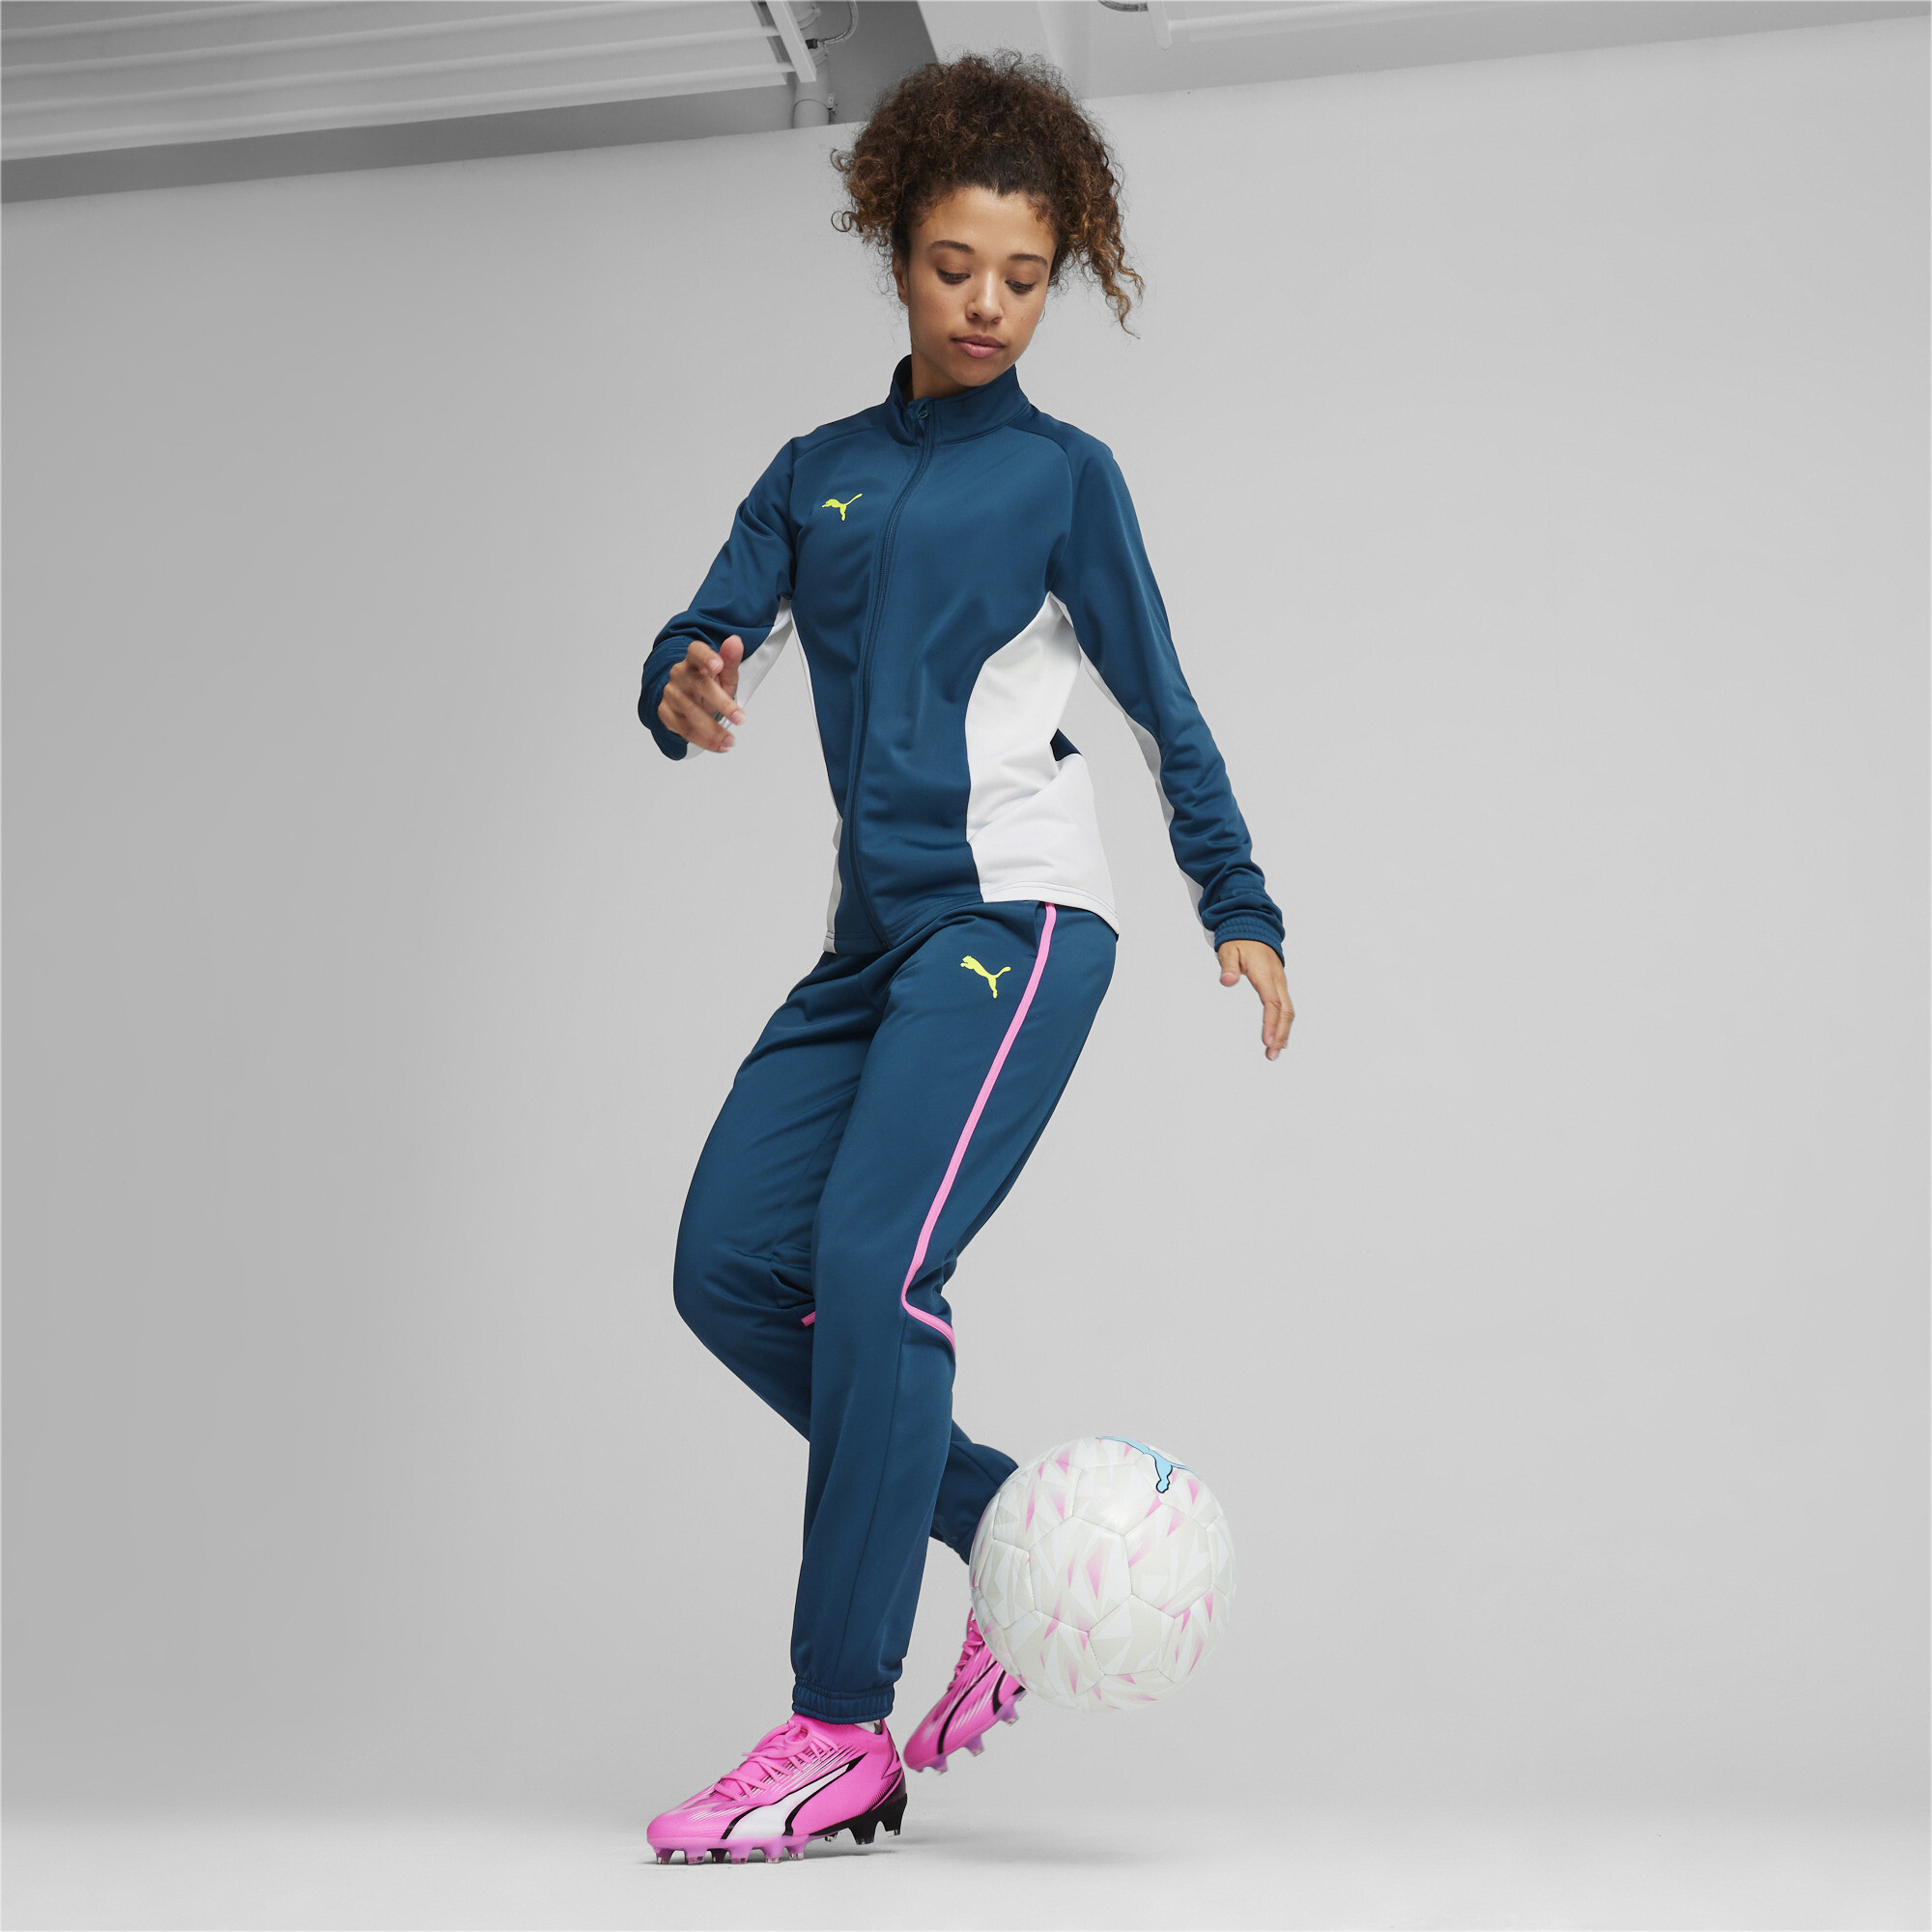 Women's PUMA ULTRA MATCH FG/AG Football Boots In Pink, Size EU 38